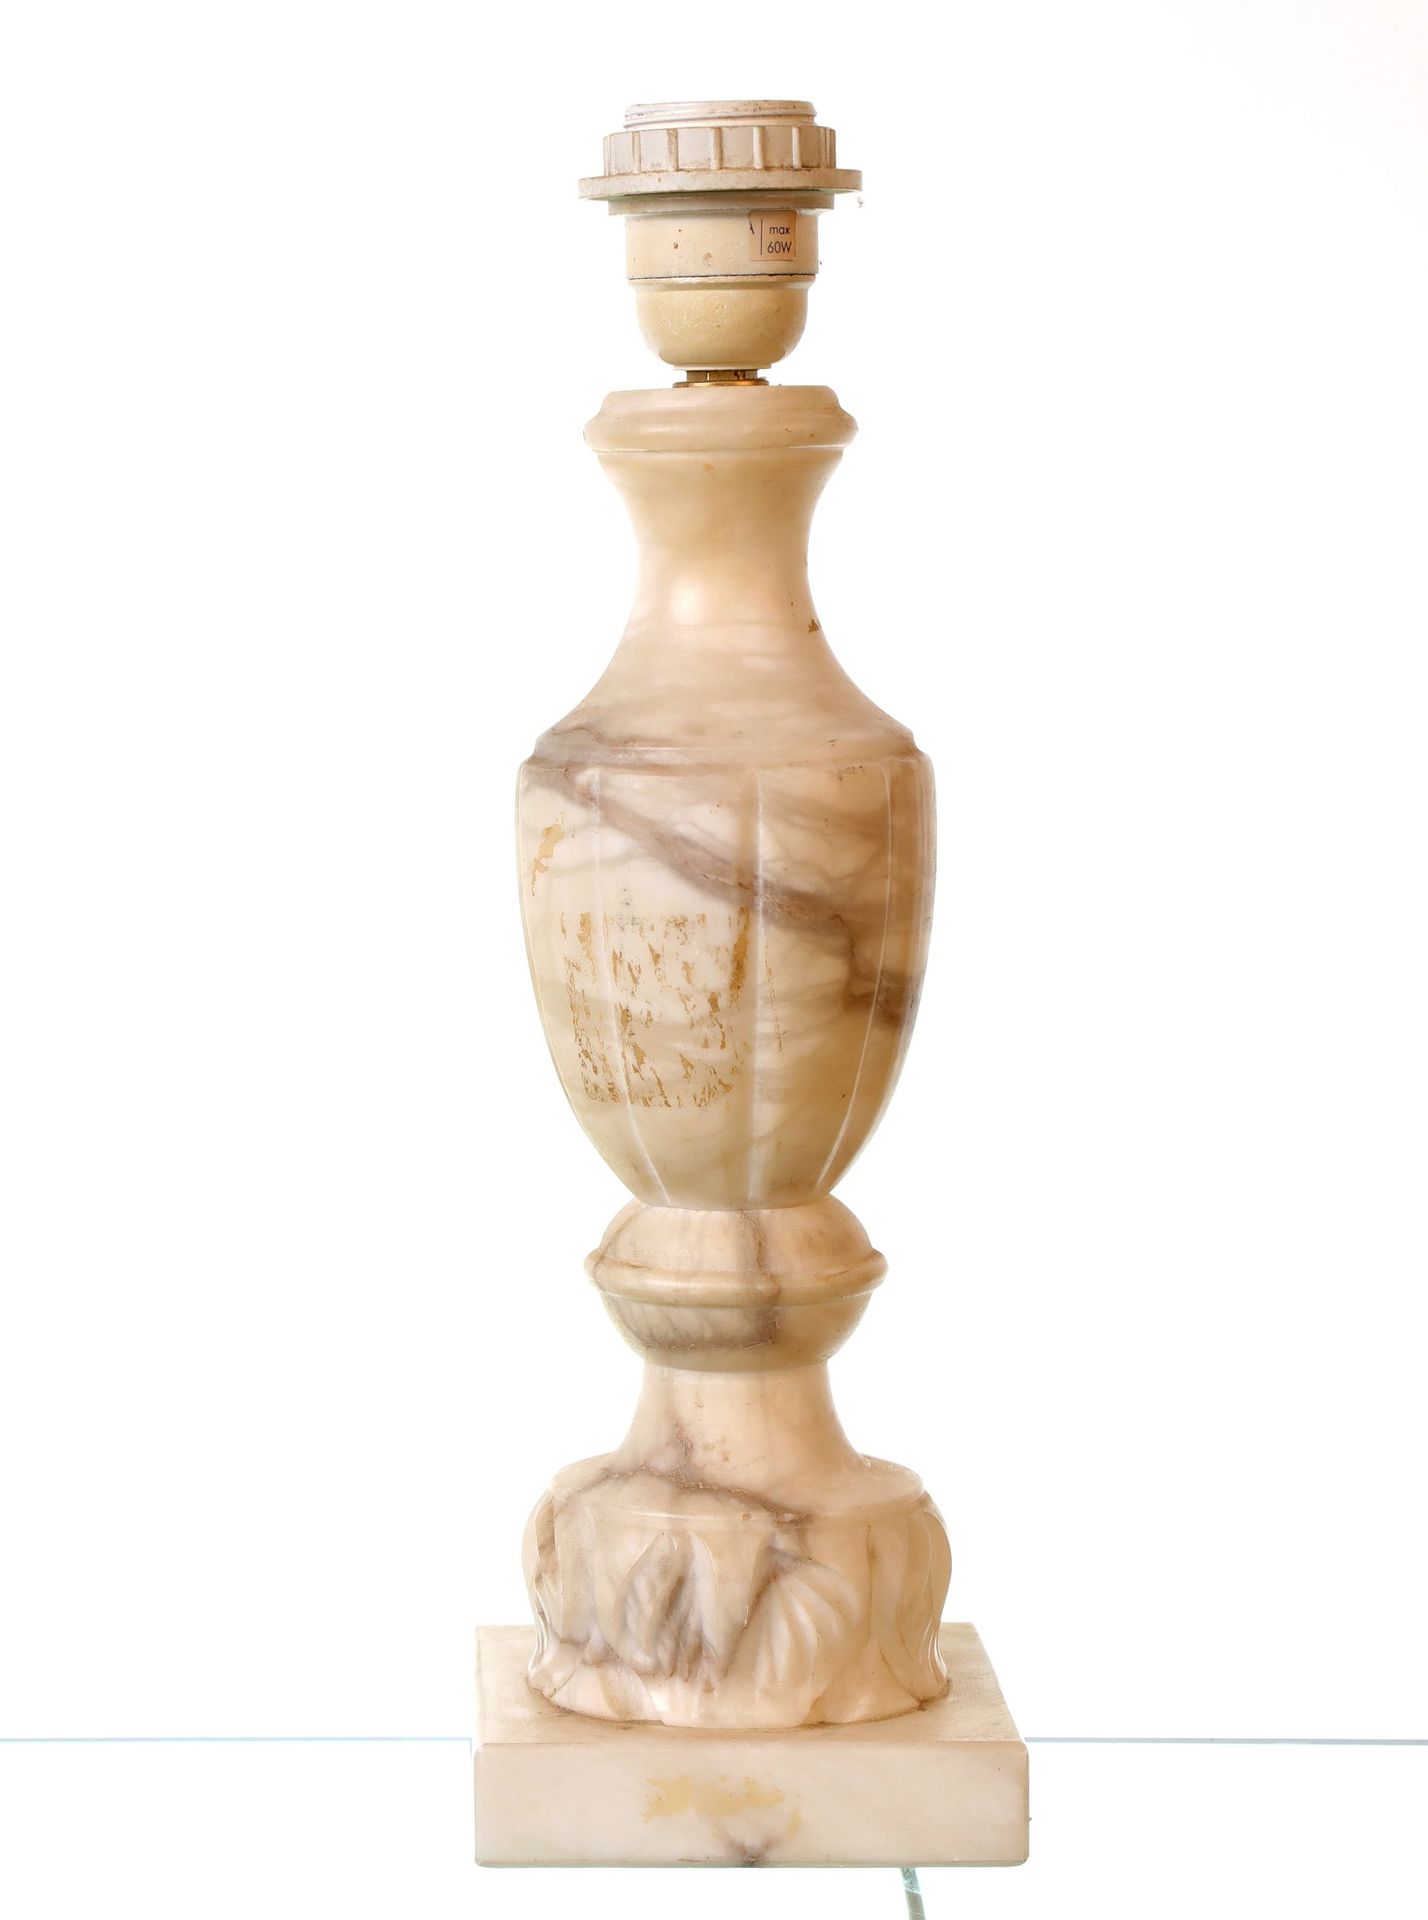 Null Lampada in marmo bianco venato, forma a balaustro. Altezza: 36 cm